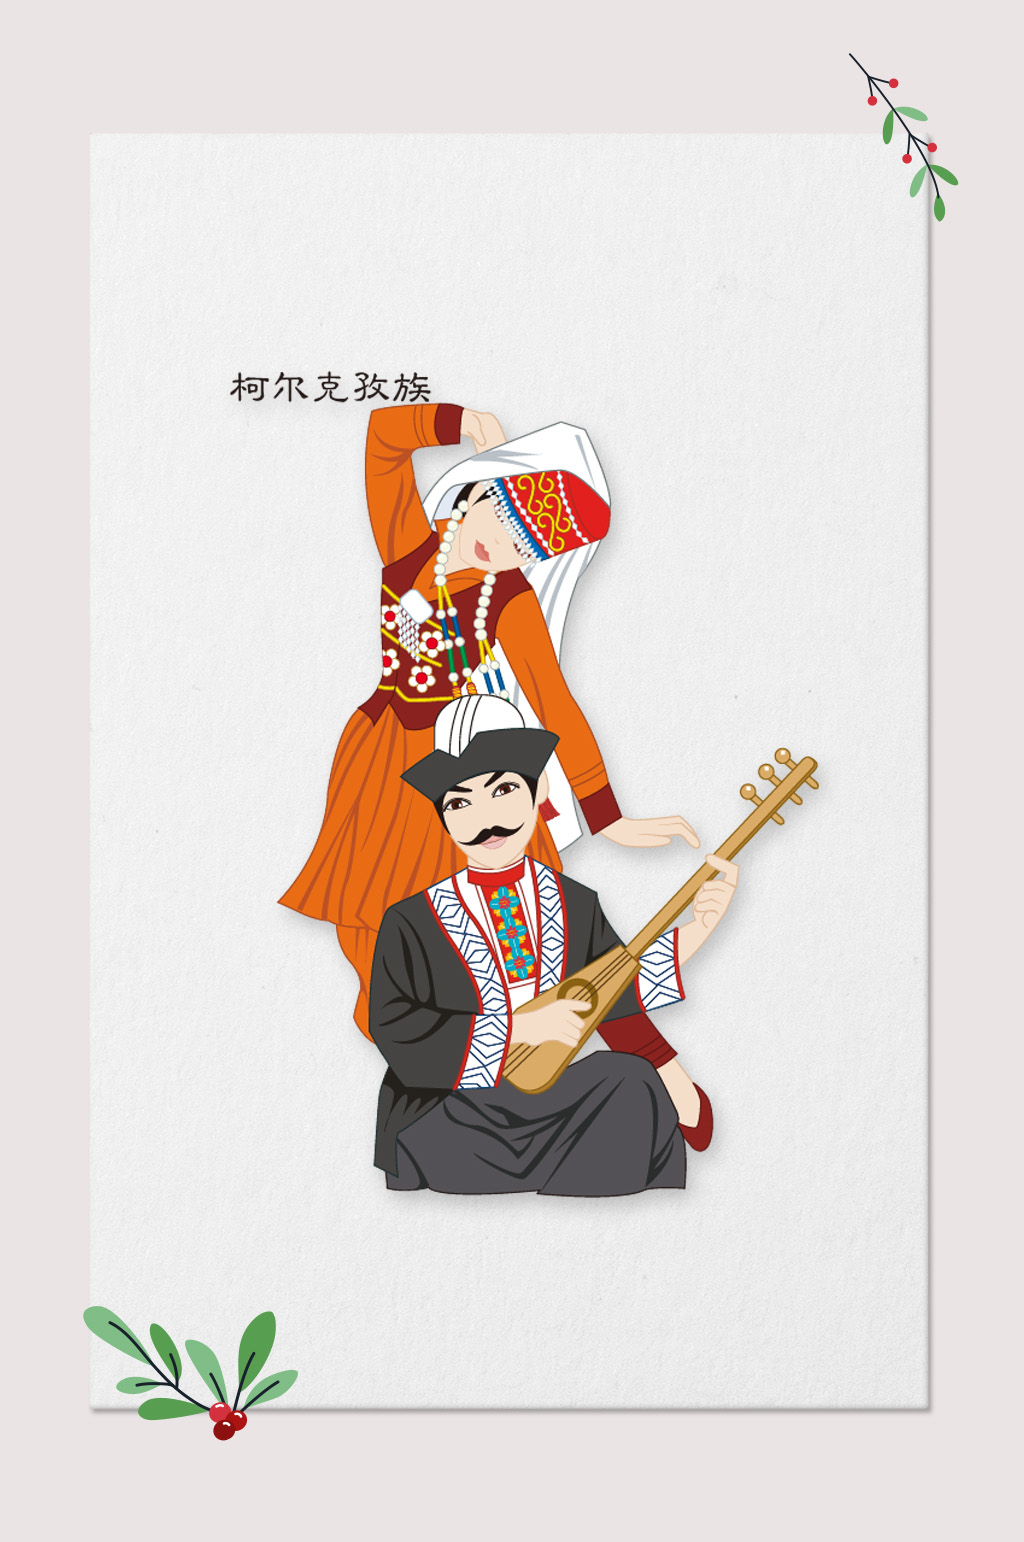 柯尔克孜族民族文化素材民族插画元素